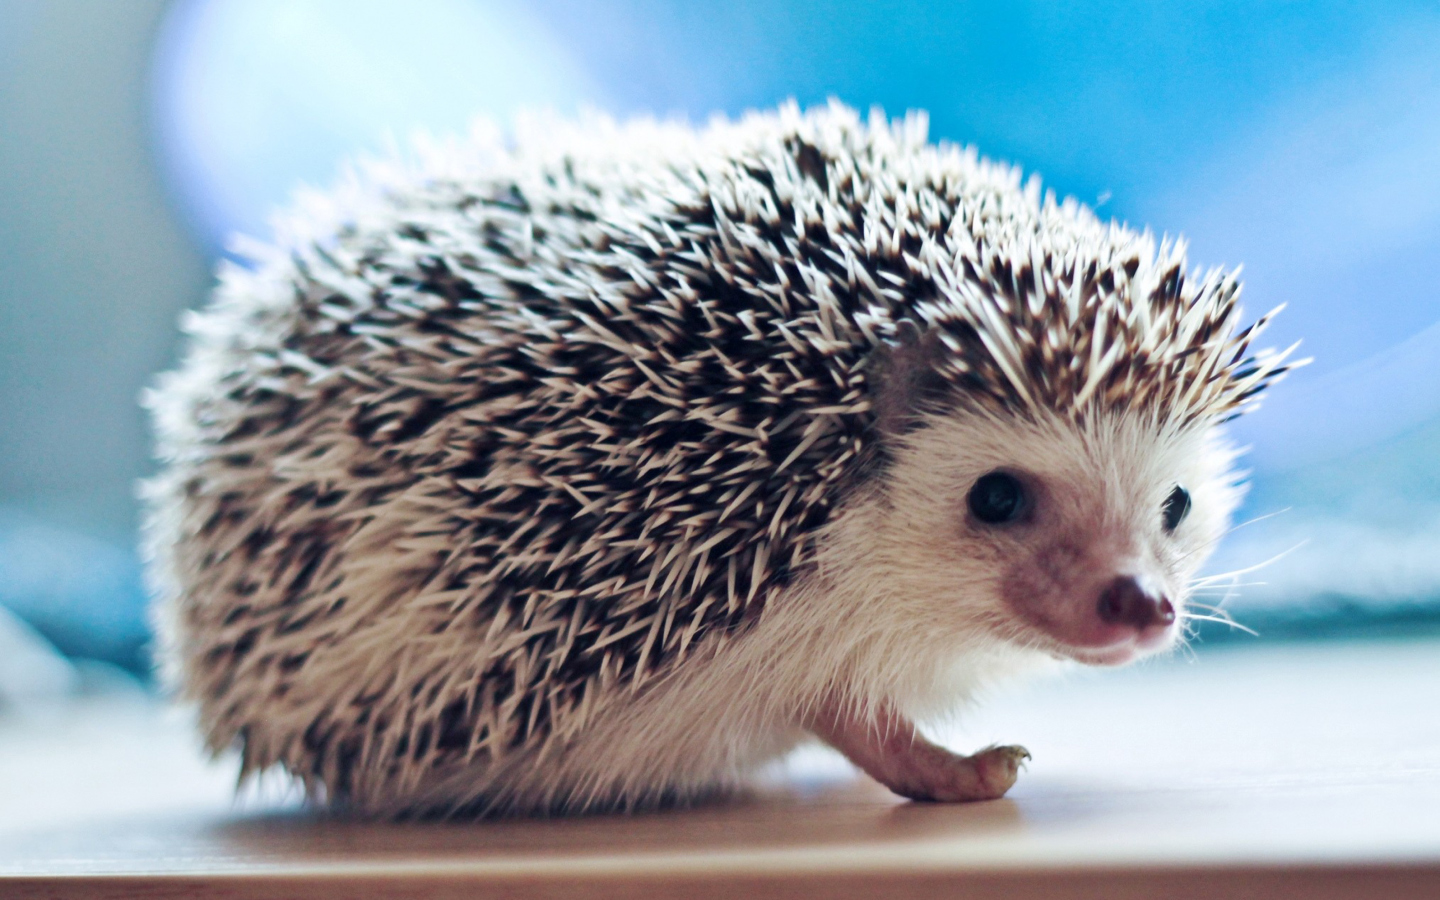 Cute Hedgehog wallpaper 1440x900